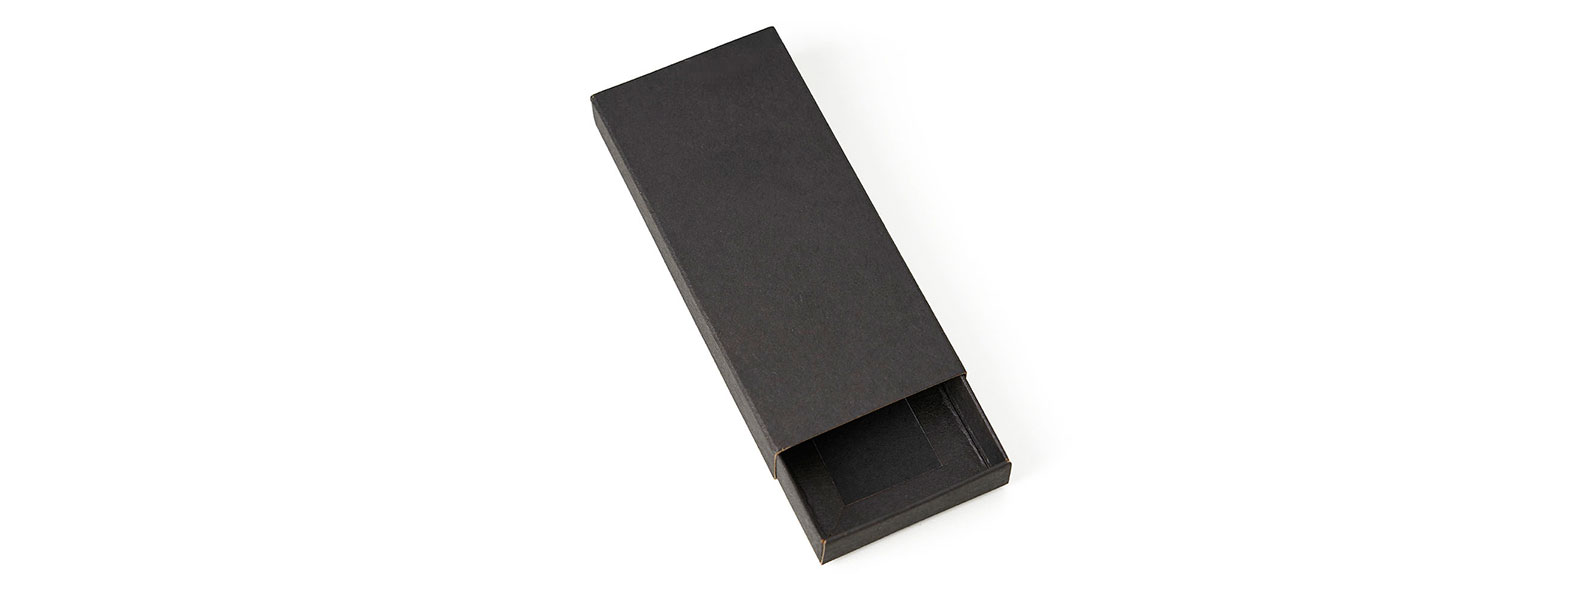 Confeccionado em metal cromado brilhante com detalhe frontal em bambu, possui argola com 3,3cm e está acomodado em uma embalagem interna aveludada e caixa kraft com tampa fechada em cordão elástico preto para presente.